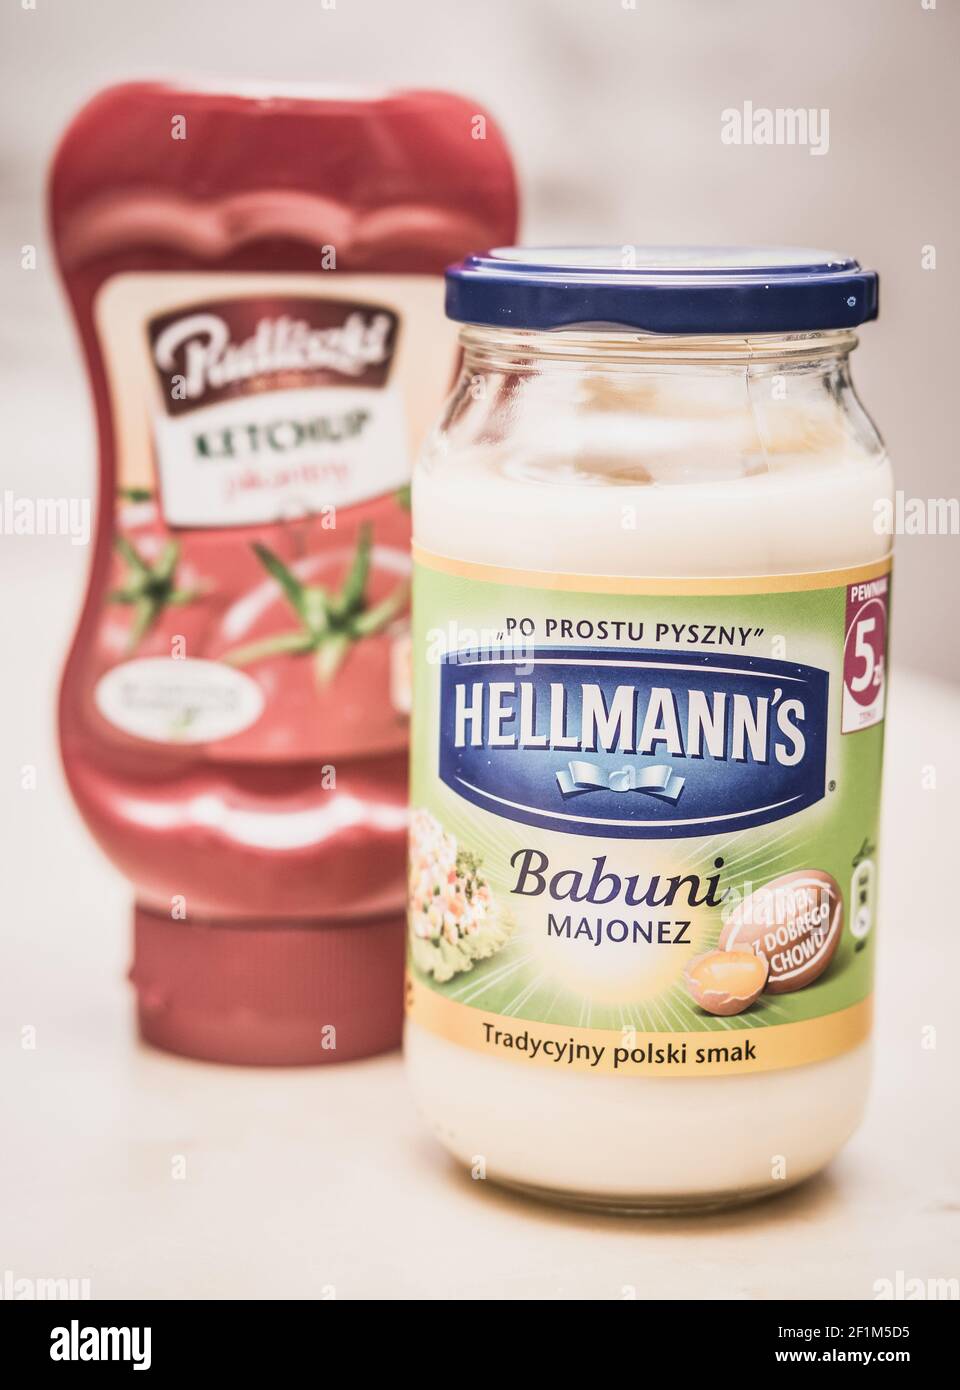 POZNAN, POLAND - Oct 09, 2016: Hellmann mayonnaise in a glass jar on table Stock Photo